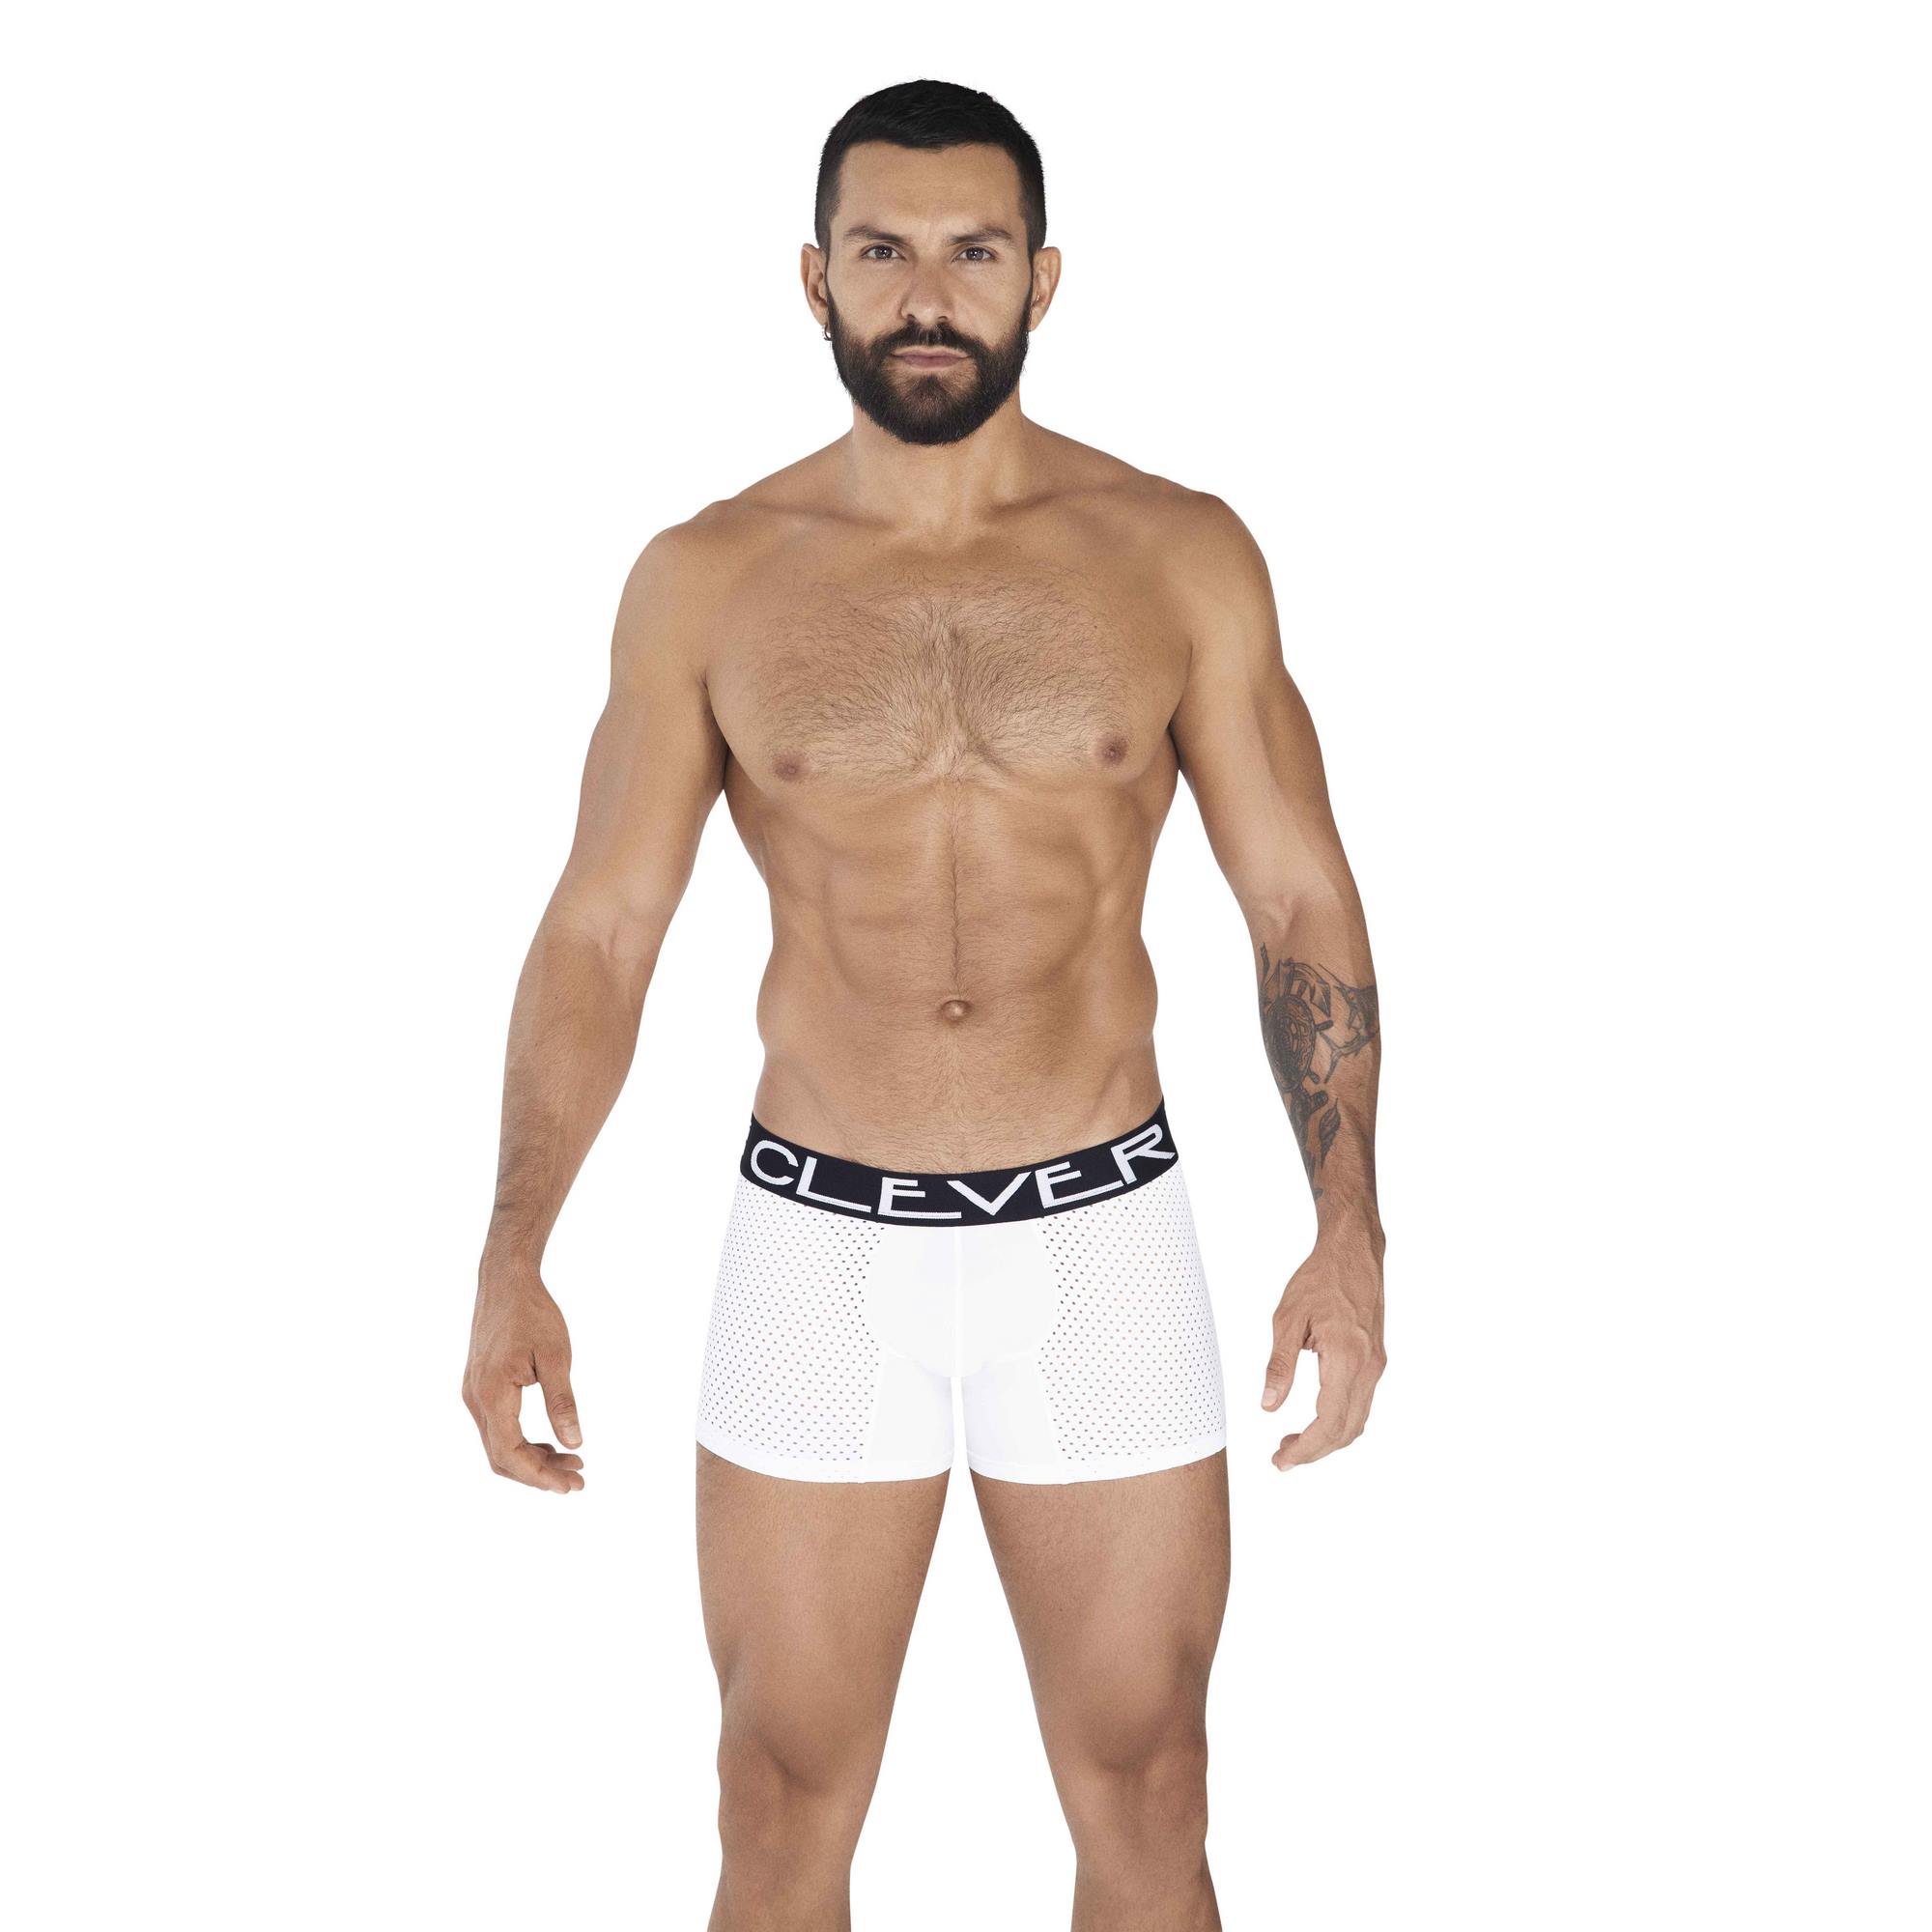 Трусы мужские Clever Masculine Underwear 0361 белые S